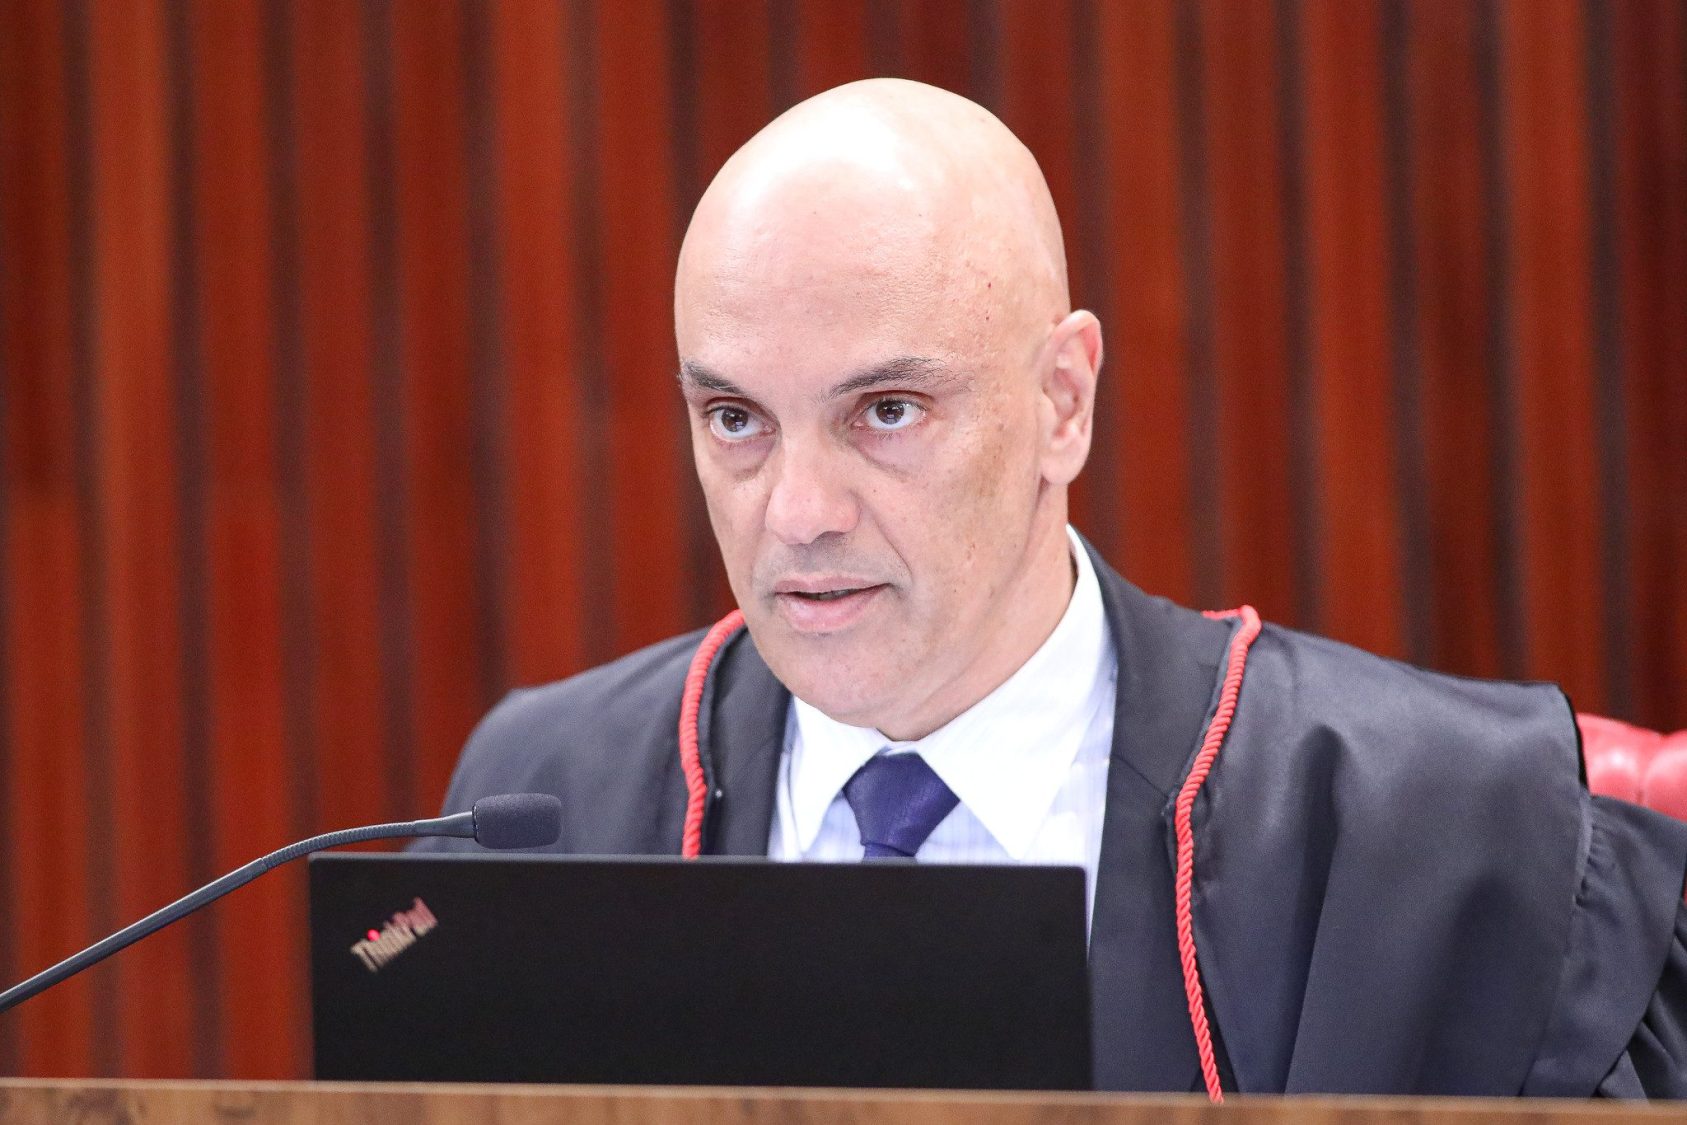 Foto de Alexandre de Moraes, vestido com a beca dos ministros do STF, durante sessão plenária